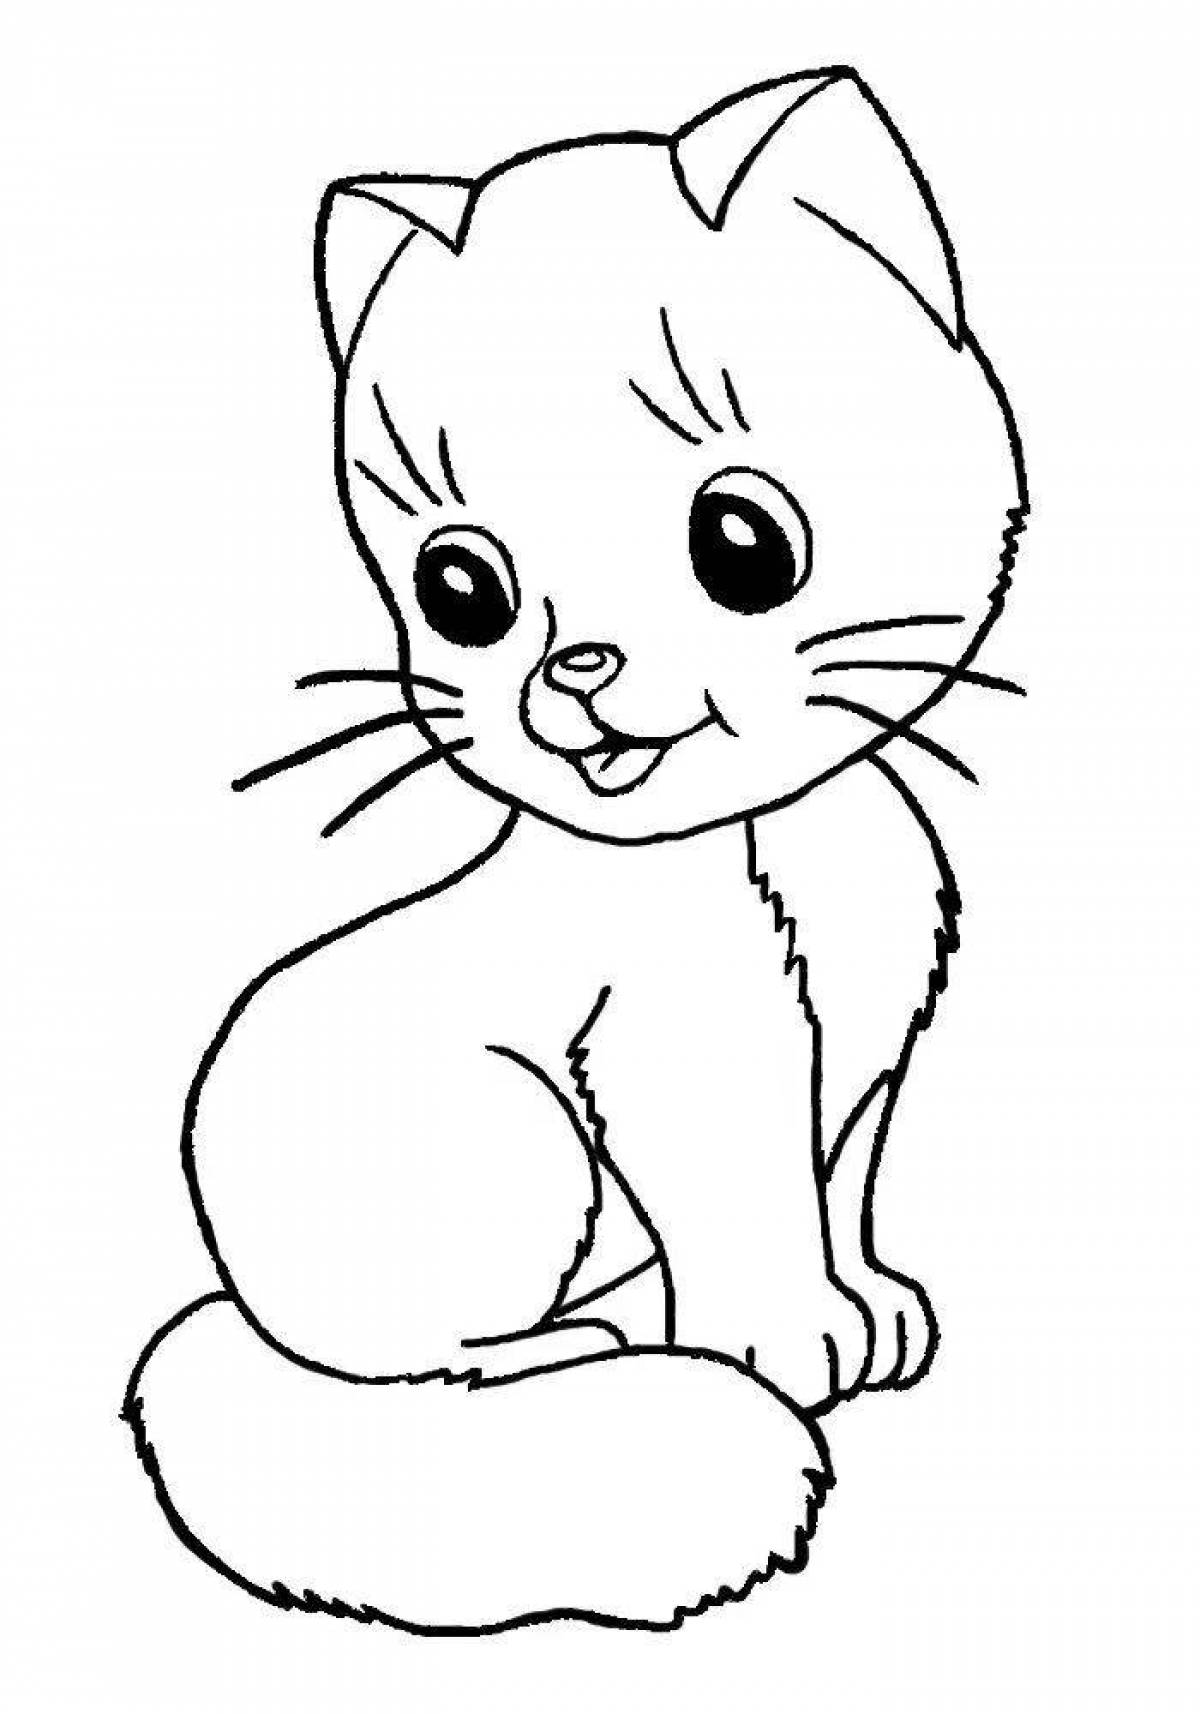 Раскраска причудливая кошка-карандаш